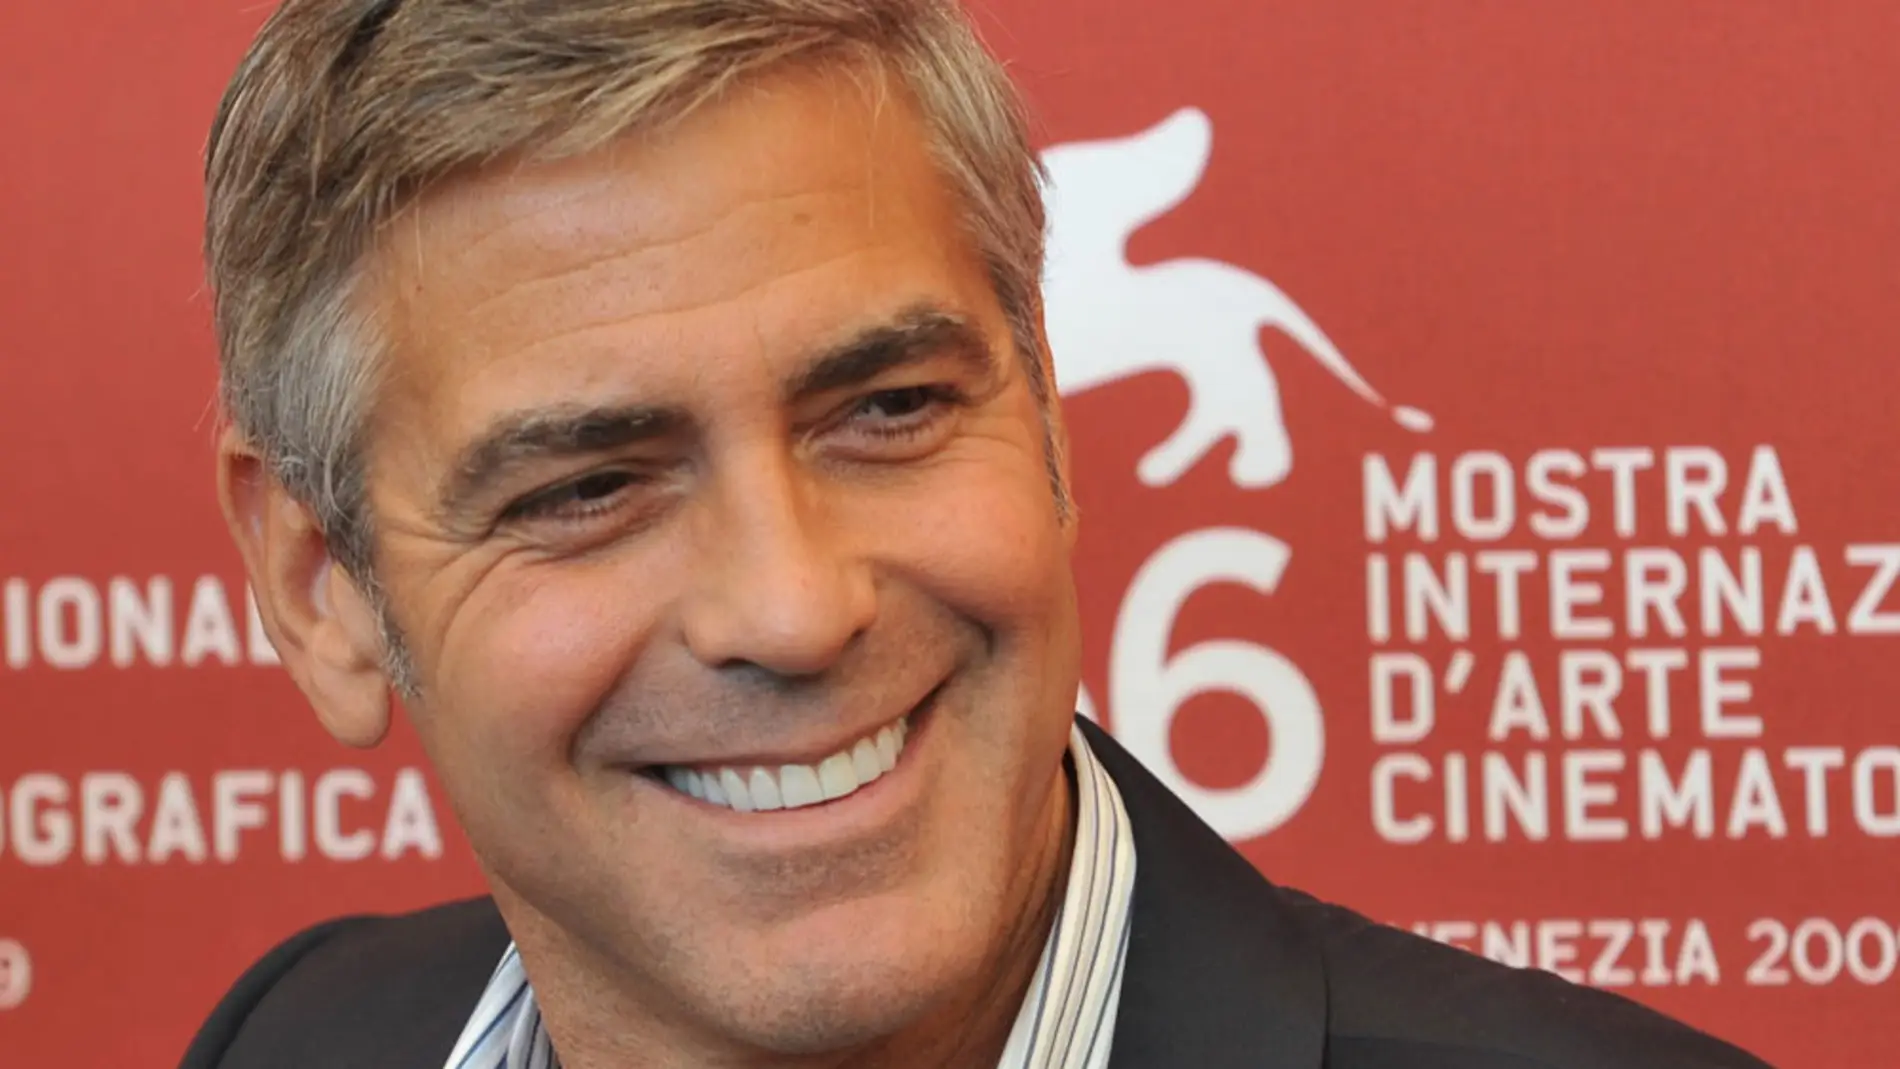 La sonrisa de Clooney es irresistible